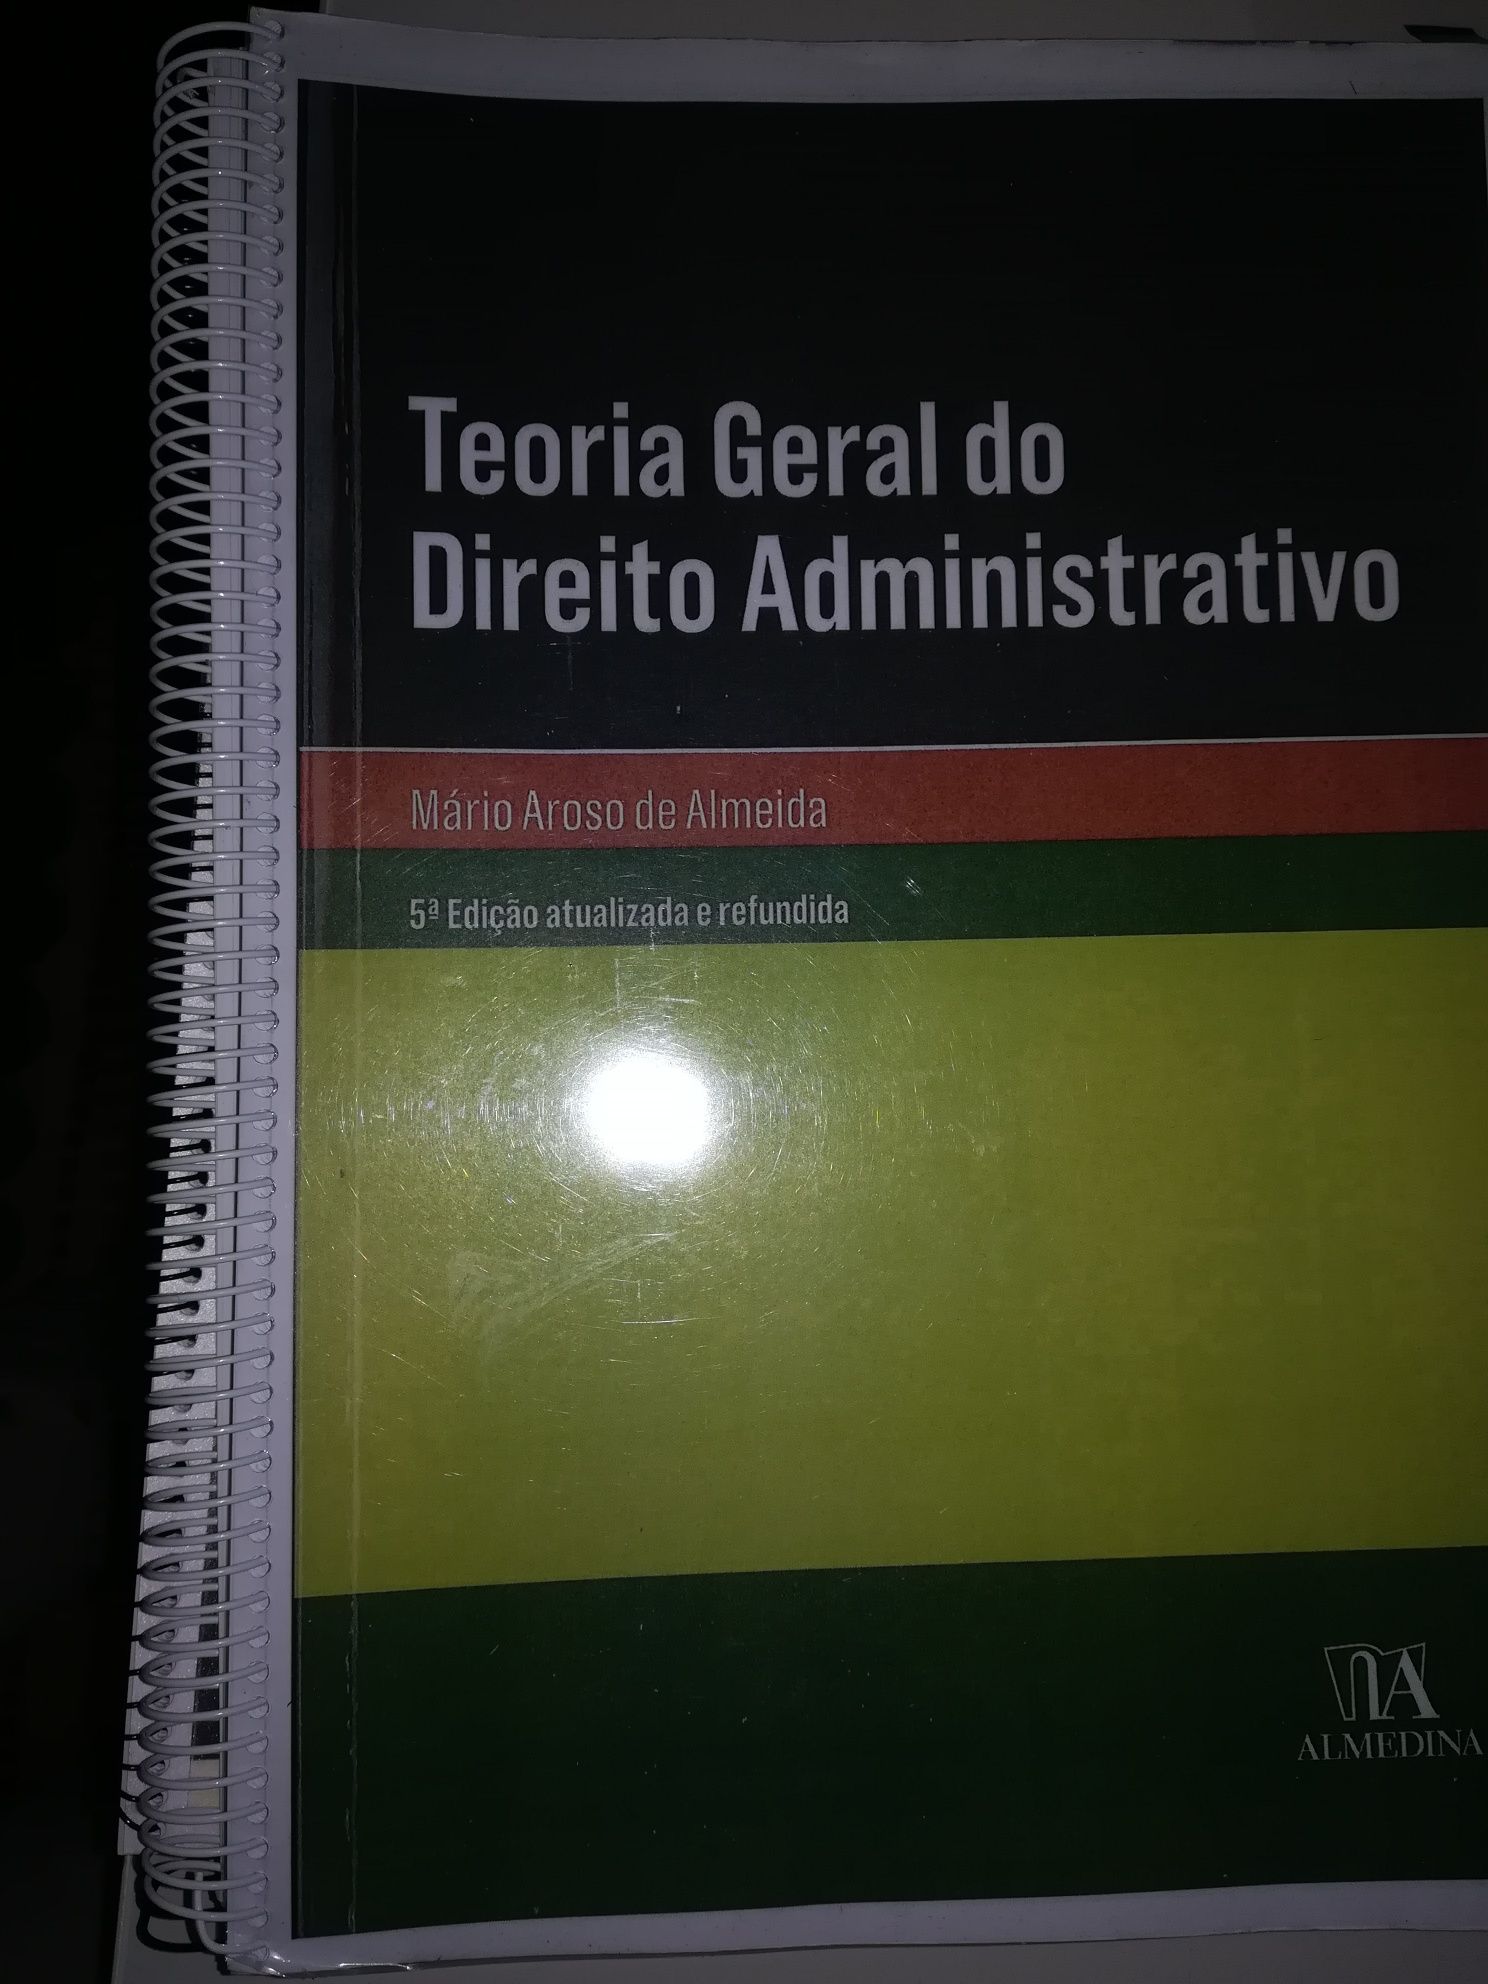 Teoria geral do direito administrativo 5 edição